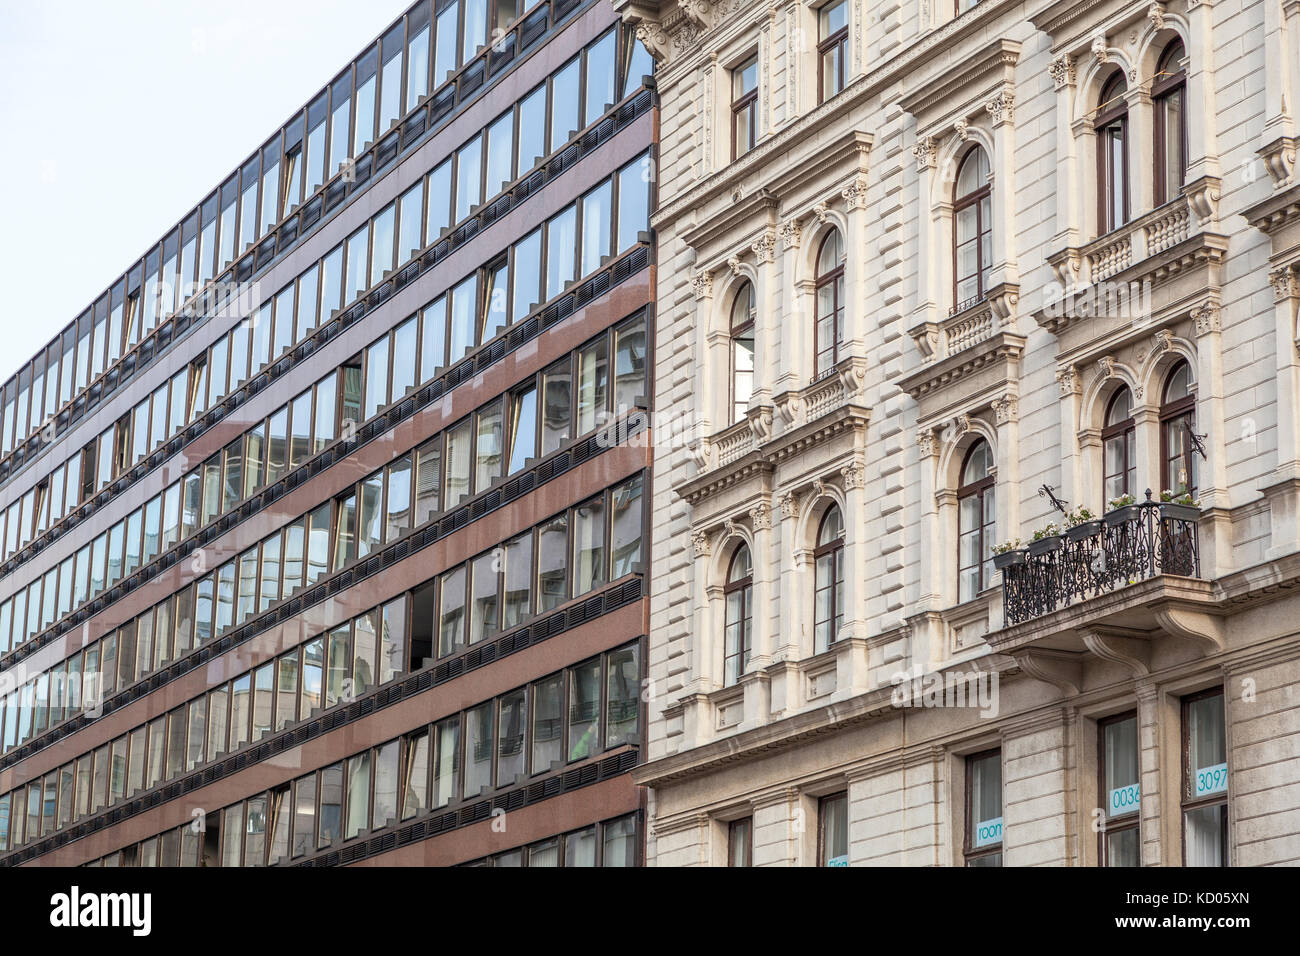 Kontrast alte und neue Architektur in Budapest, Ungarn Stock Photo